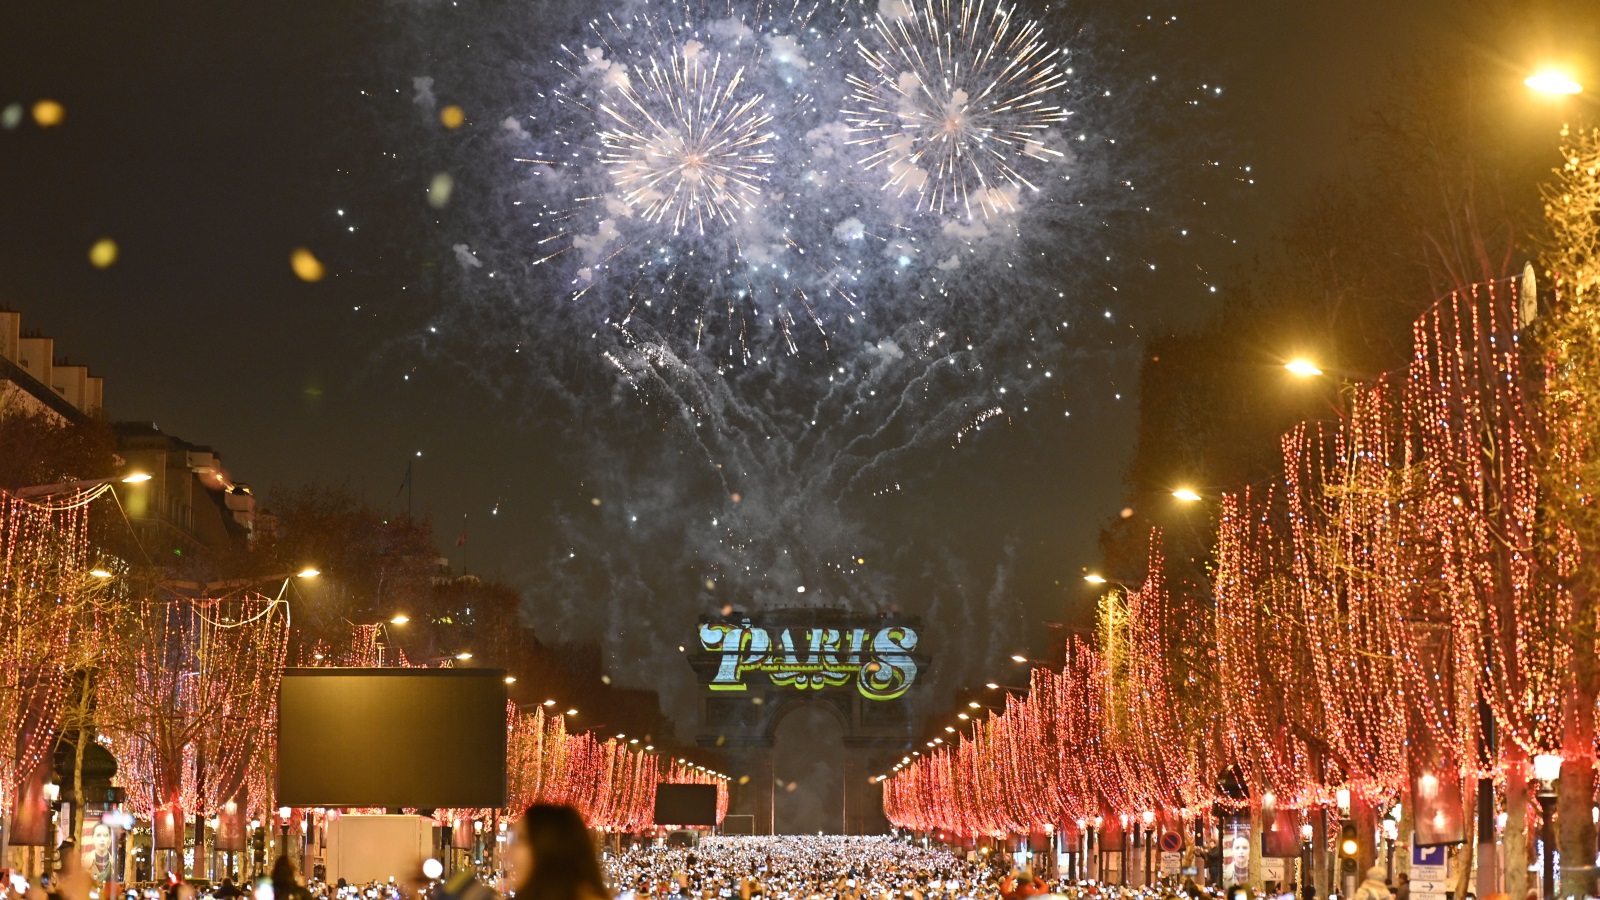 ‪لقطة من عرض الألعاب النارية والأضواء في باريس‬ (الأناضول)